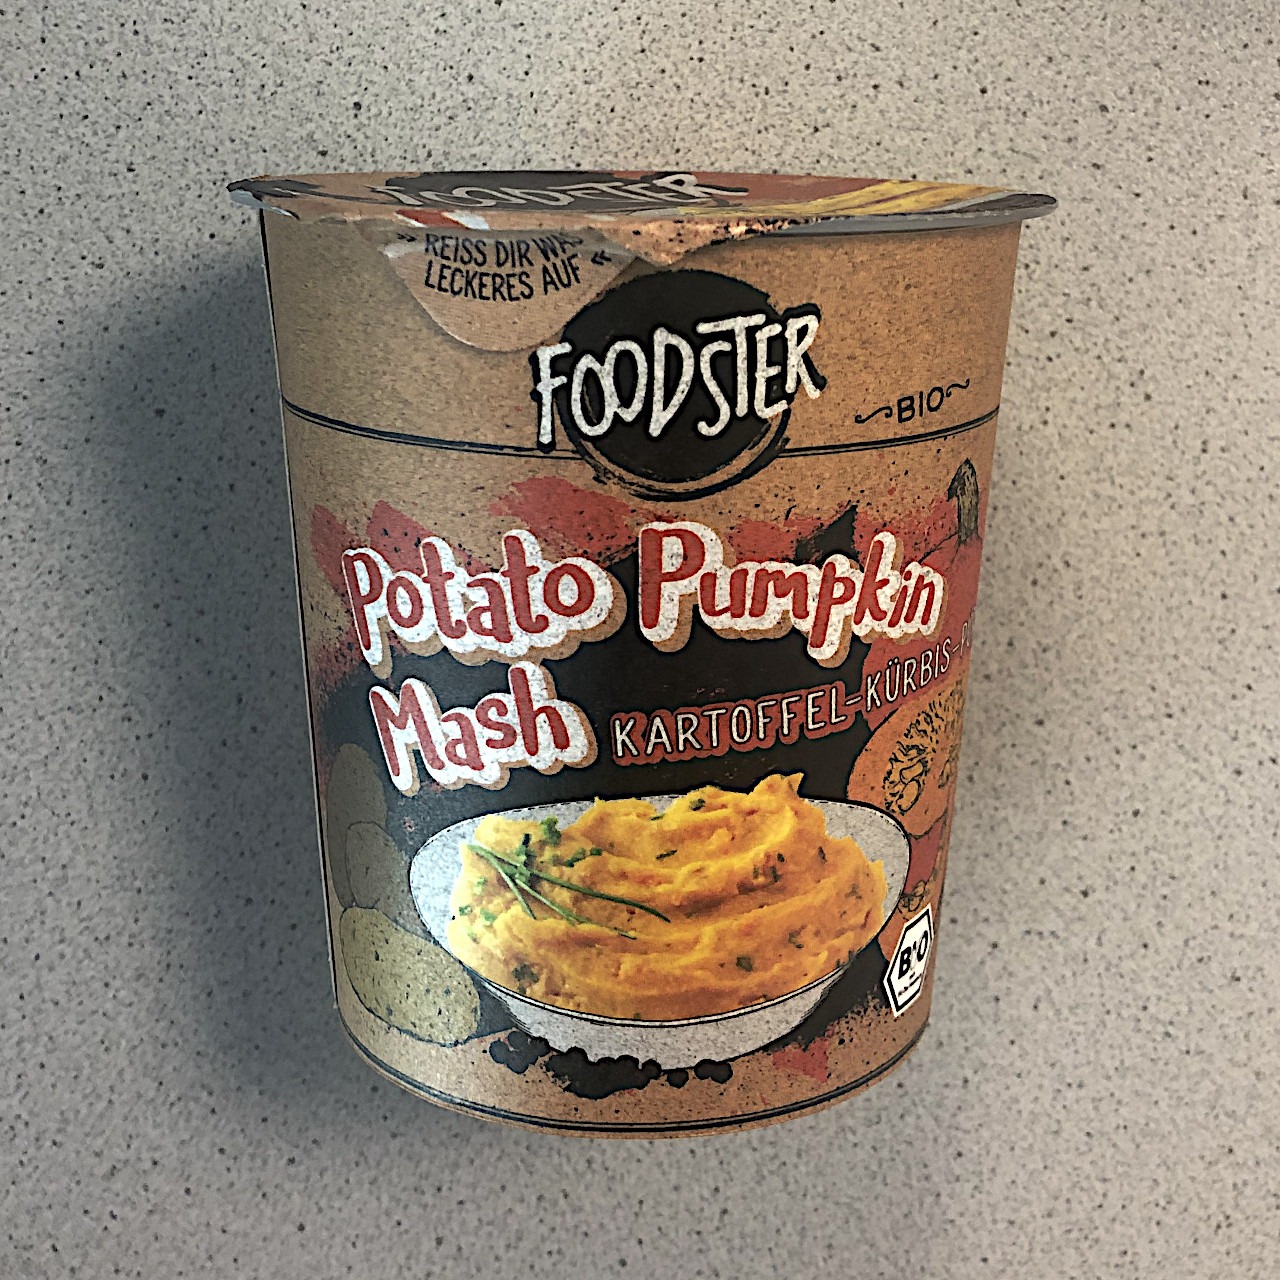 #1537: Foodster "Potato Pumpkin Mash" (Kartoffel-Kürbis Püree)